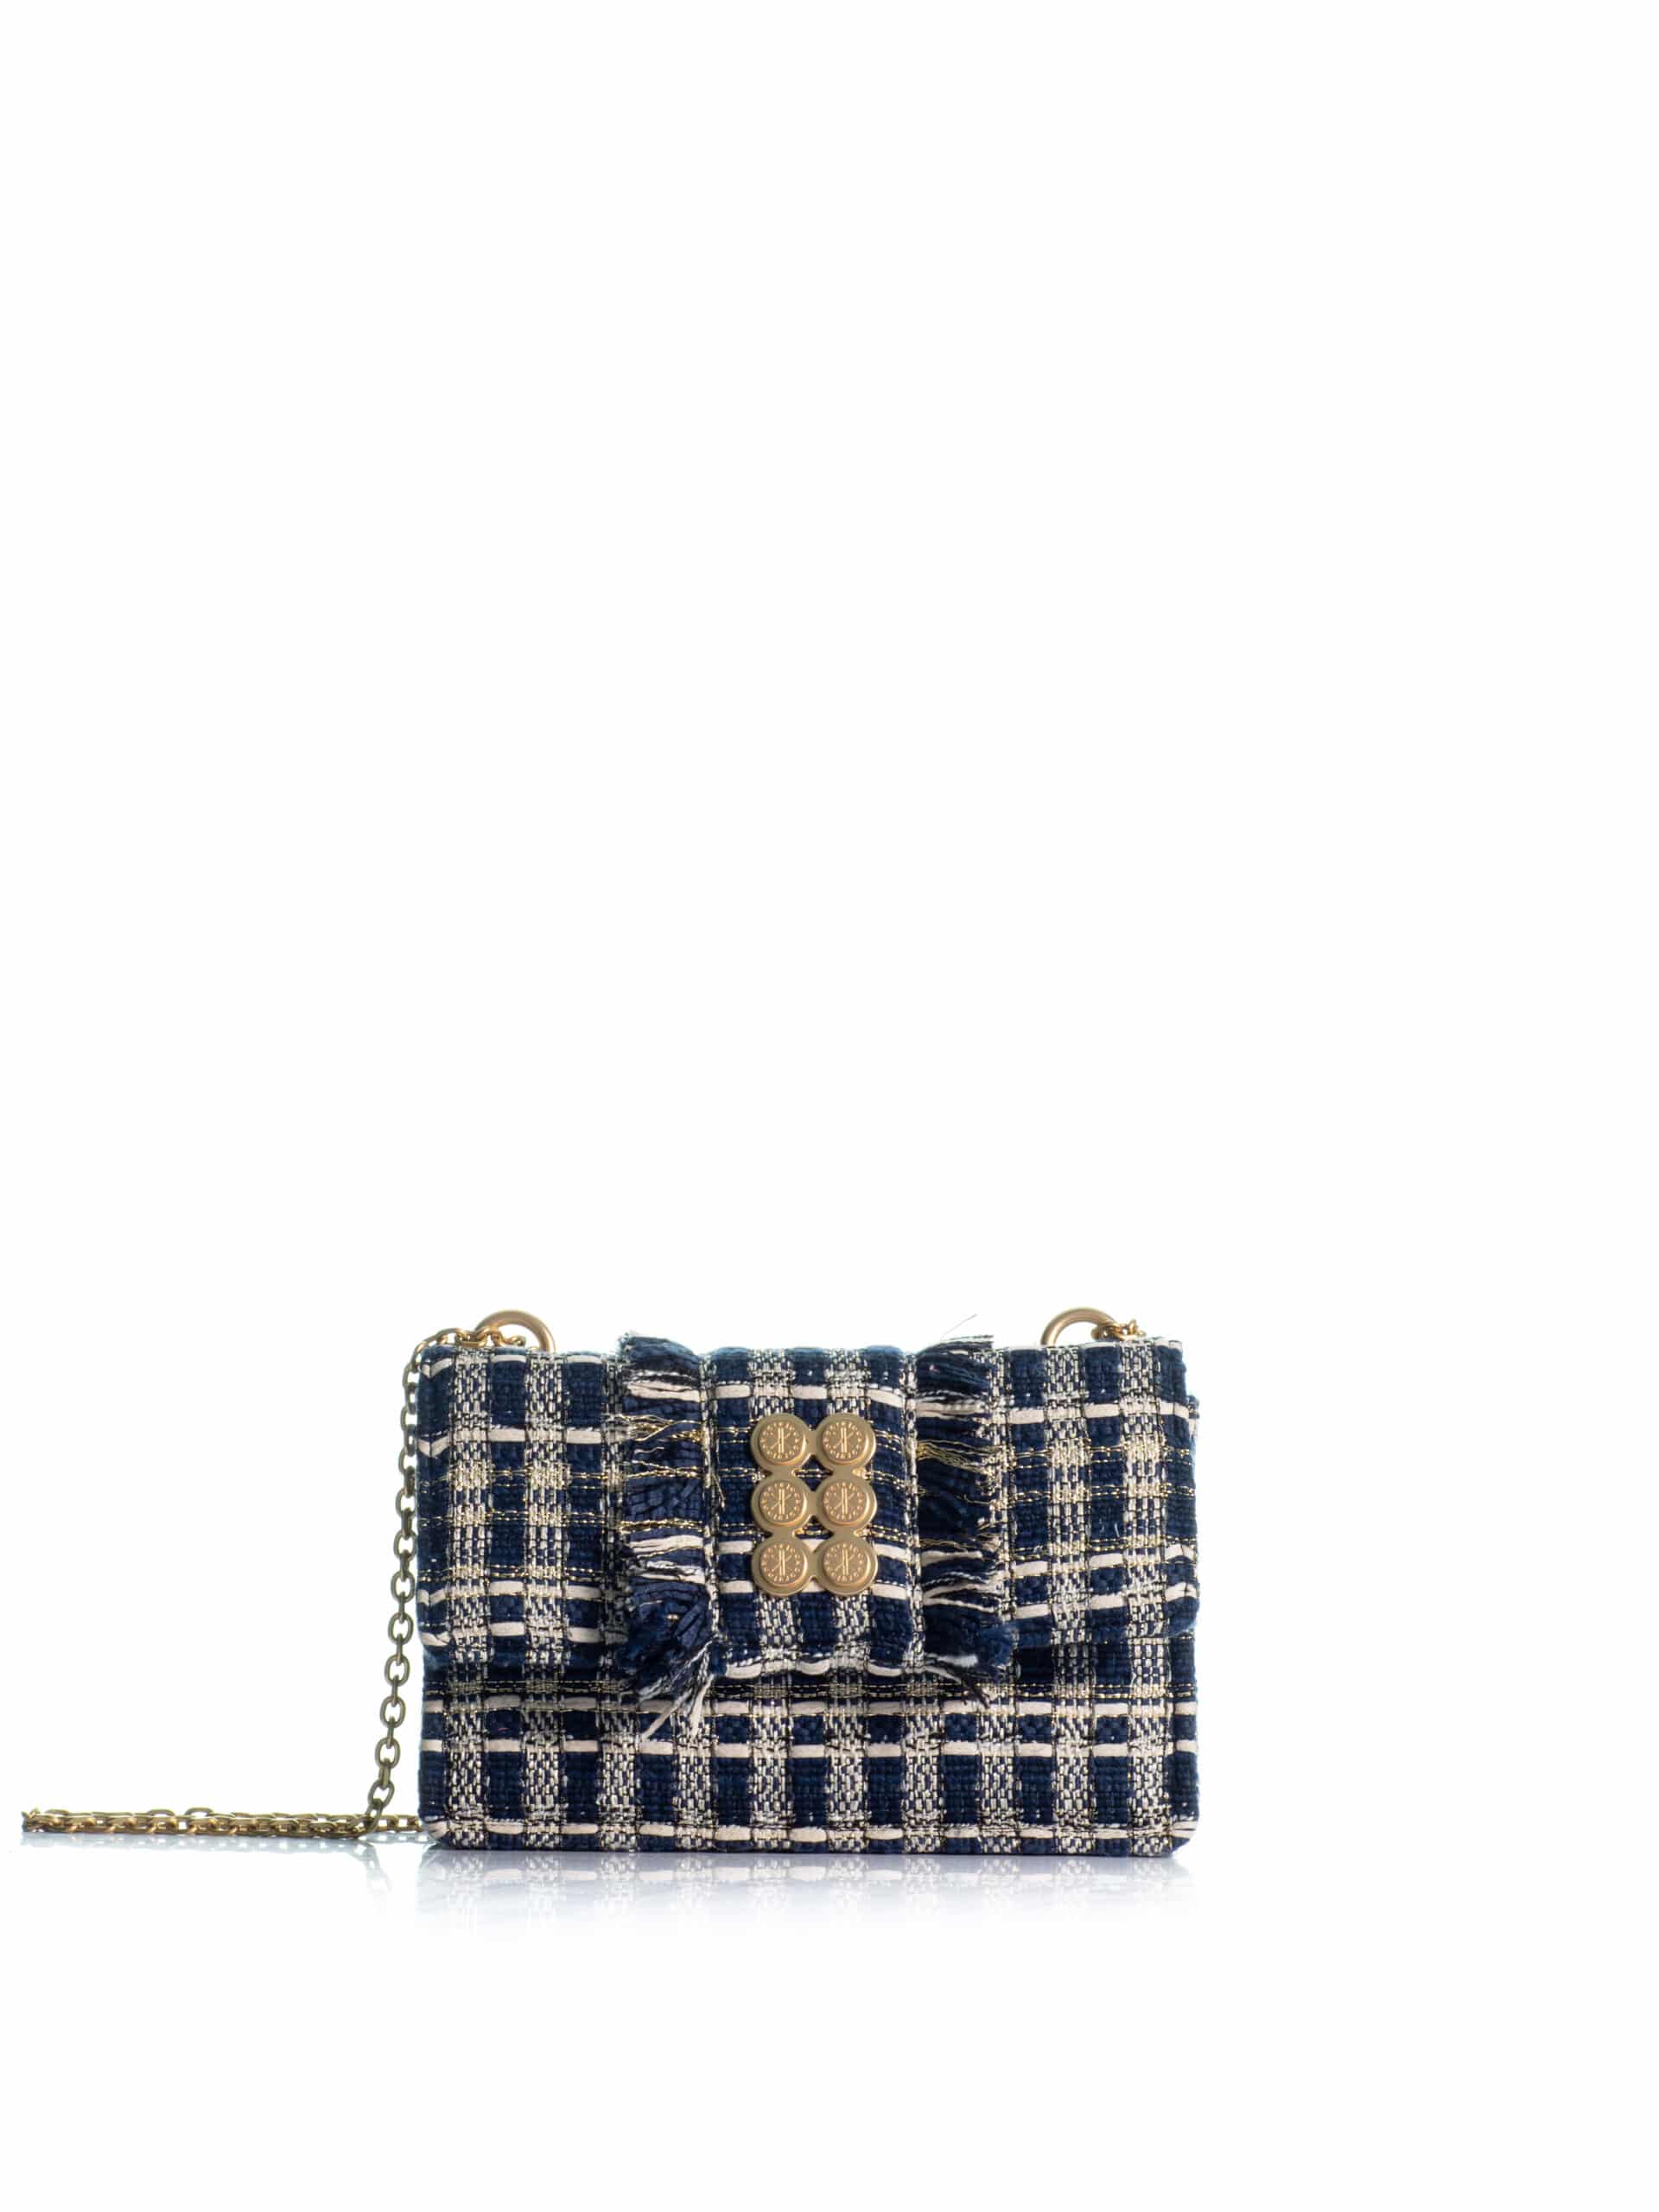 kooreloo handbags the lucerne blue/gold